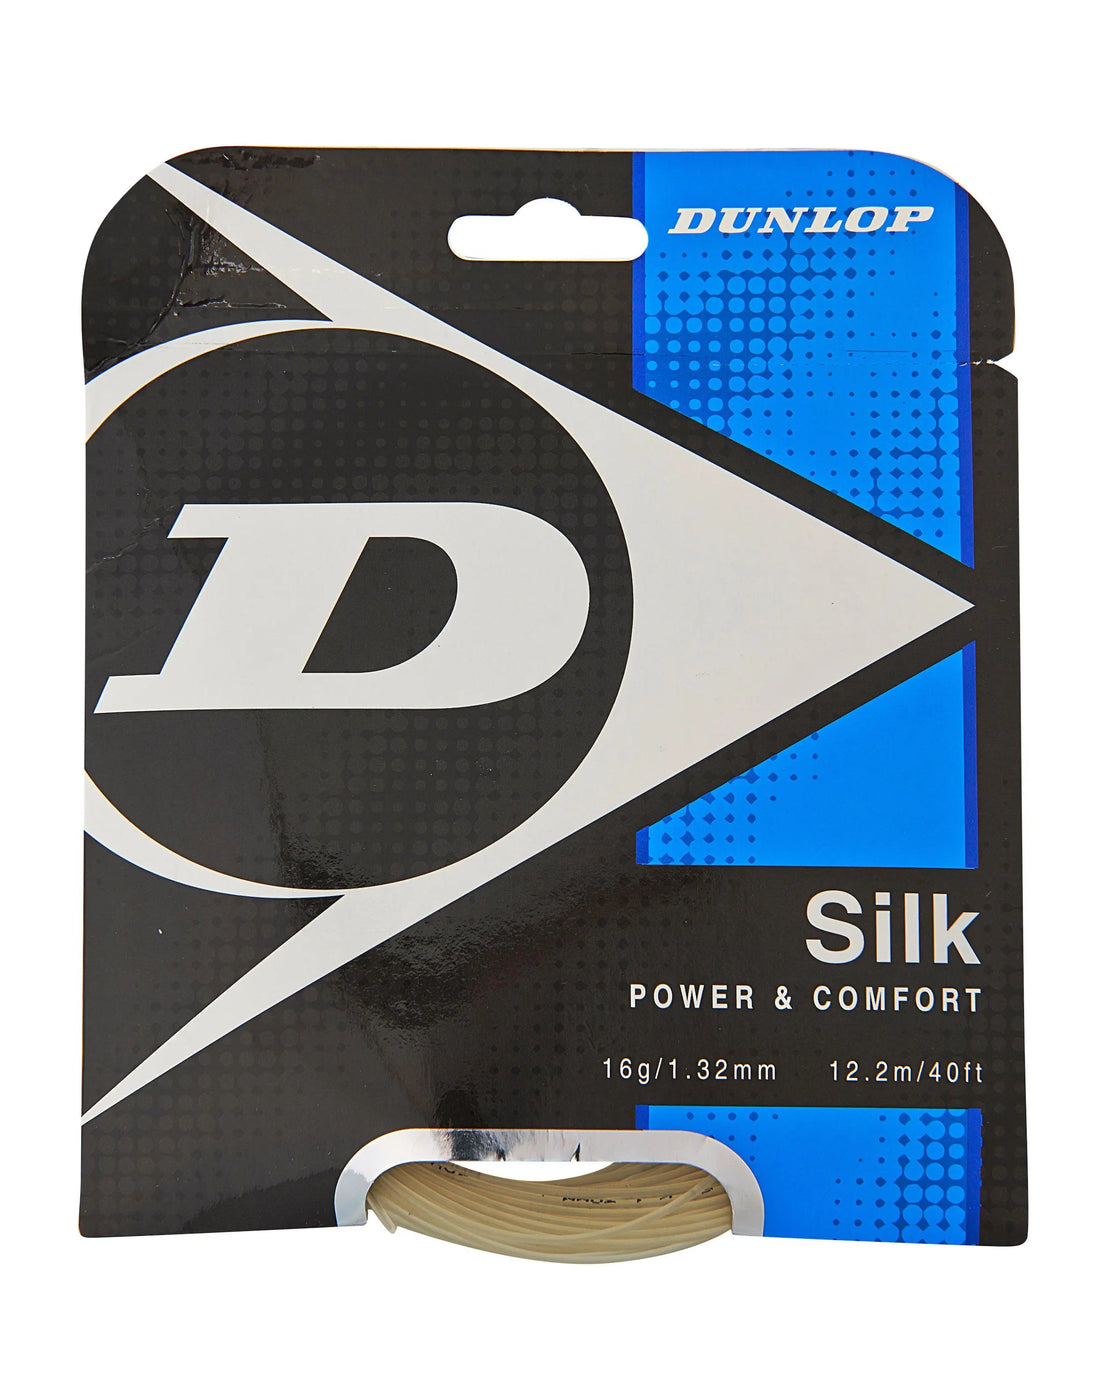 Dunlop Silk 16 Tennis String Set - Natural Color Racquet Point